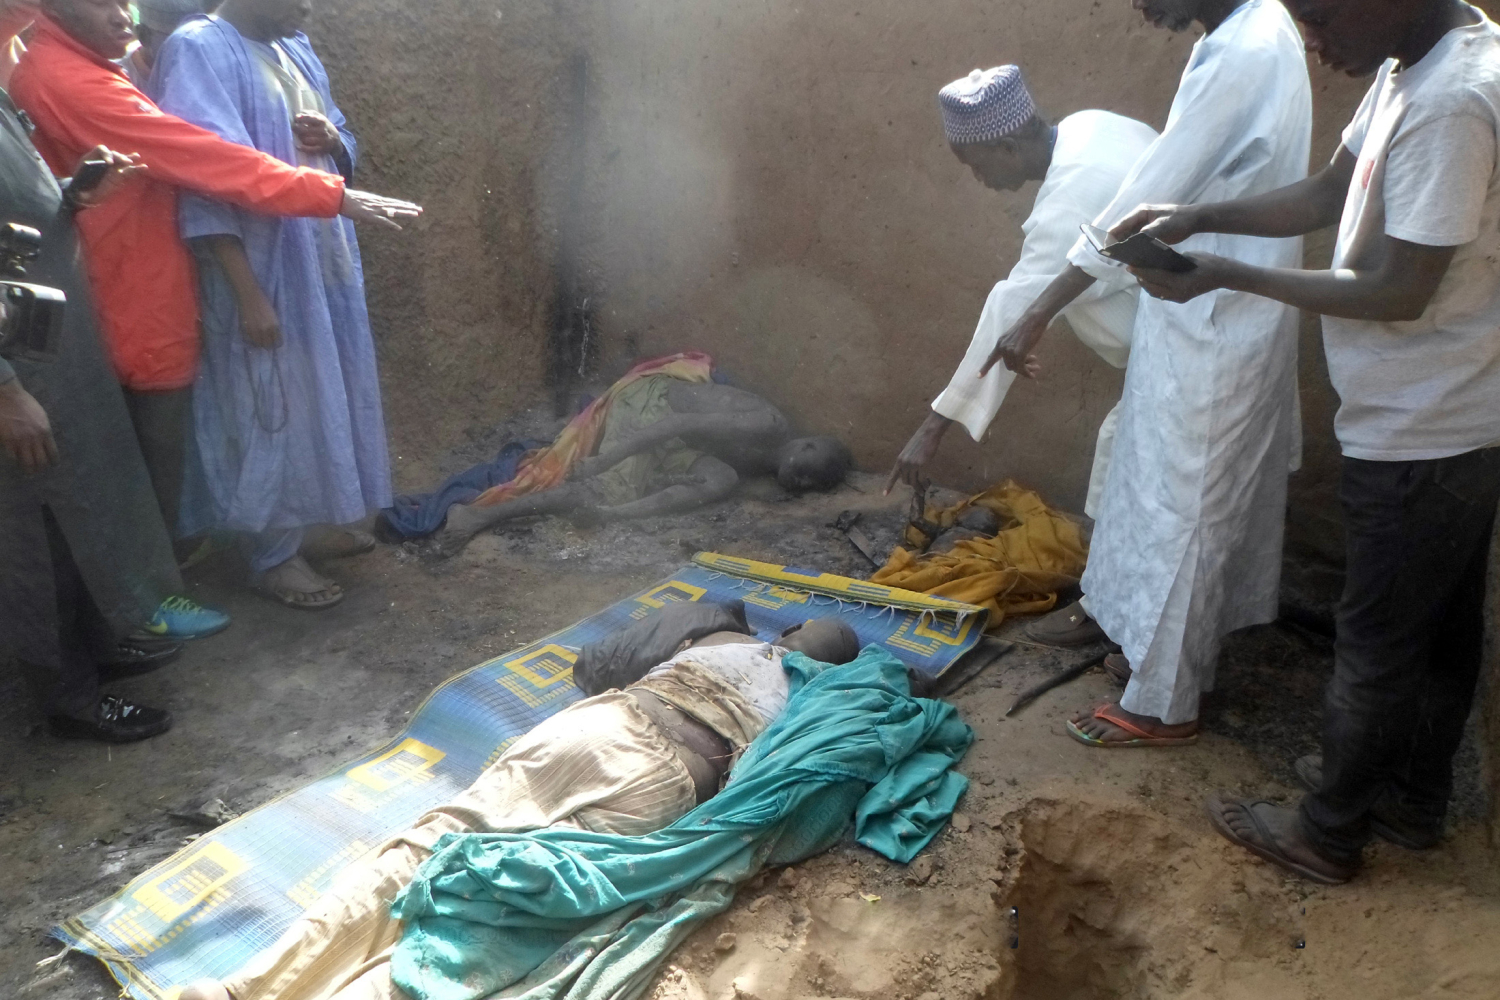 El espeluznante relato del atentado de Boko Haram: “Un gran infierno envolvió la aldea”